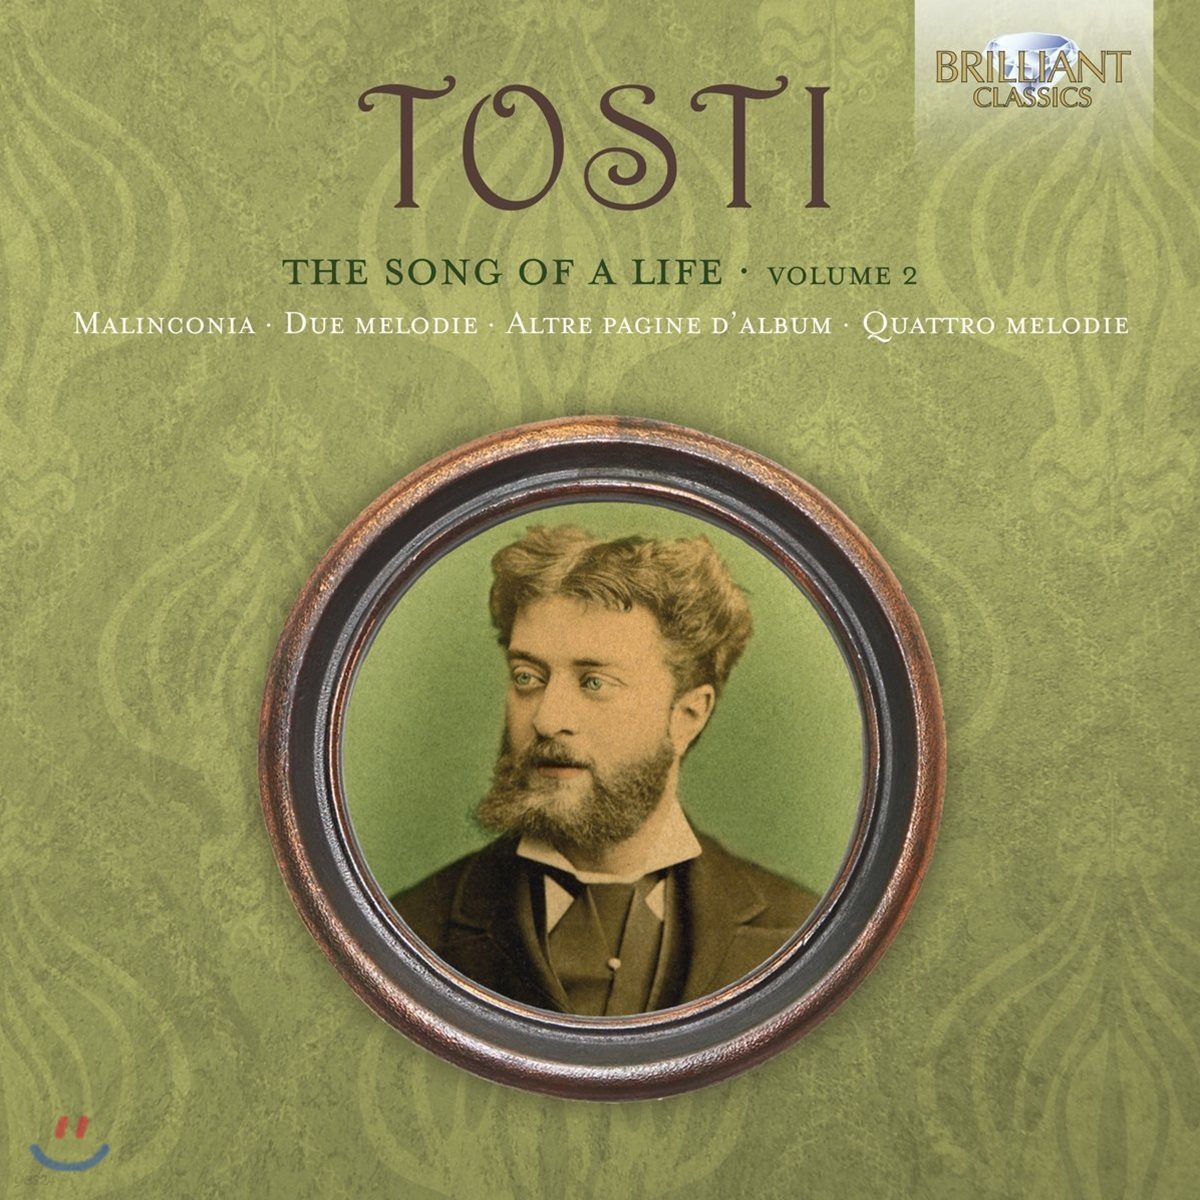 토스티: 가곡 작품 전곡 2집 (Francesco Paolo Tosti: The Song of A Life, Volume 2 - Malinconia, Due Melodie, Altre Pagine d&#39;Album)